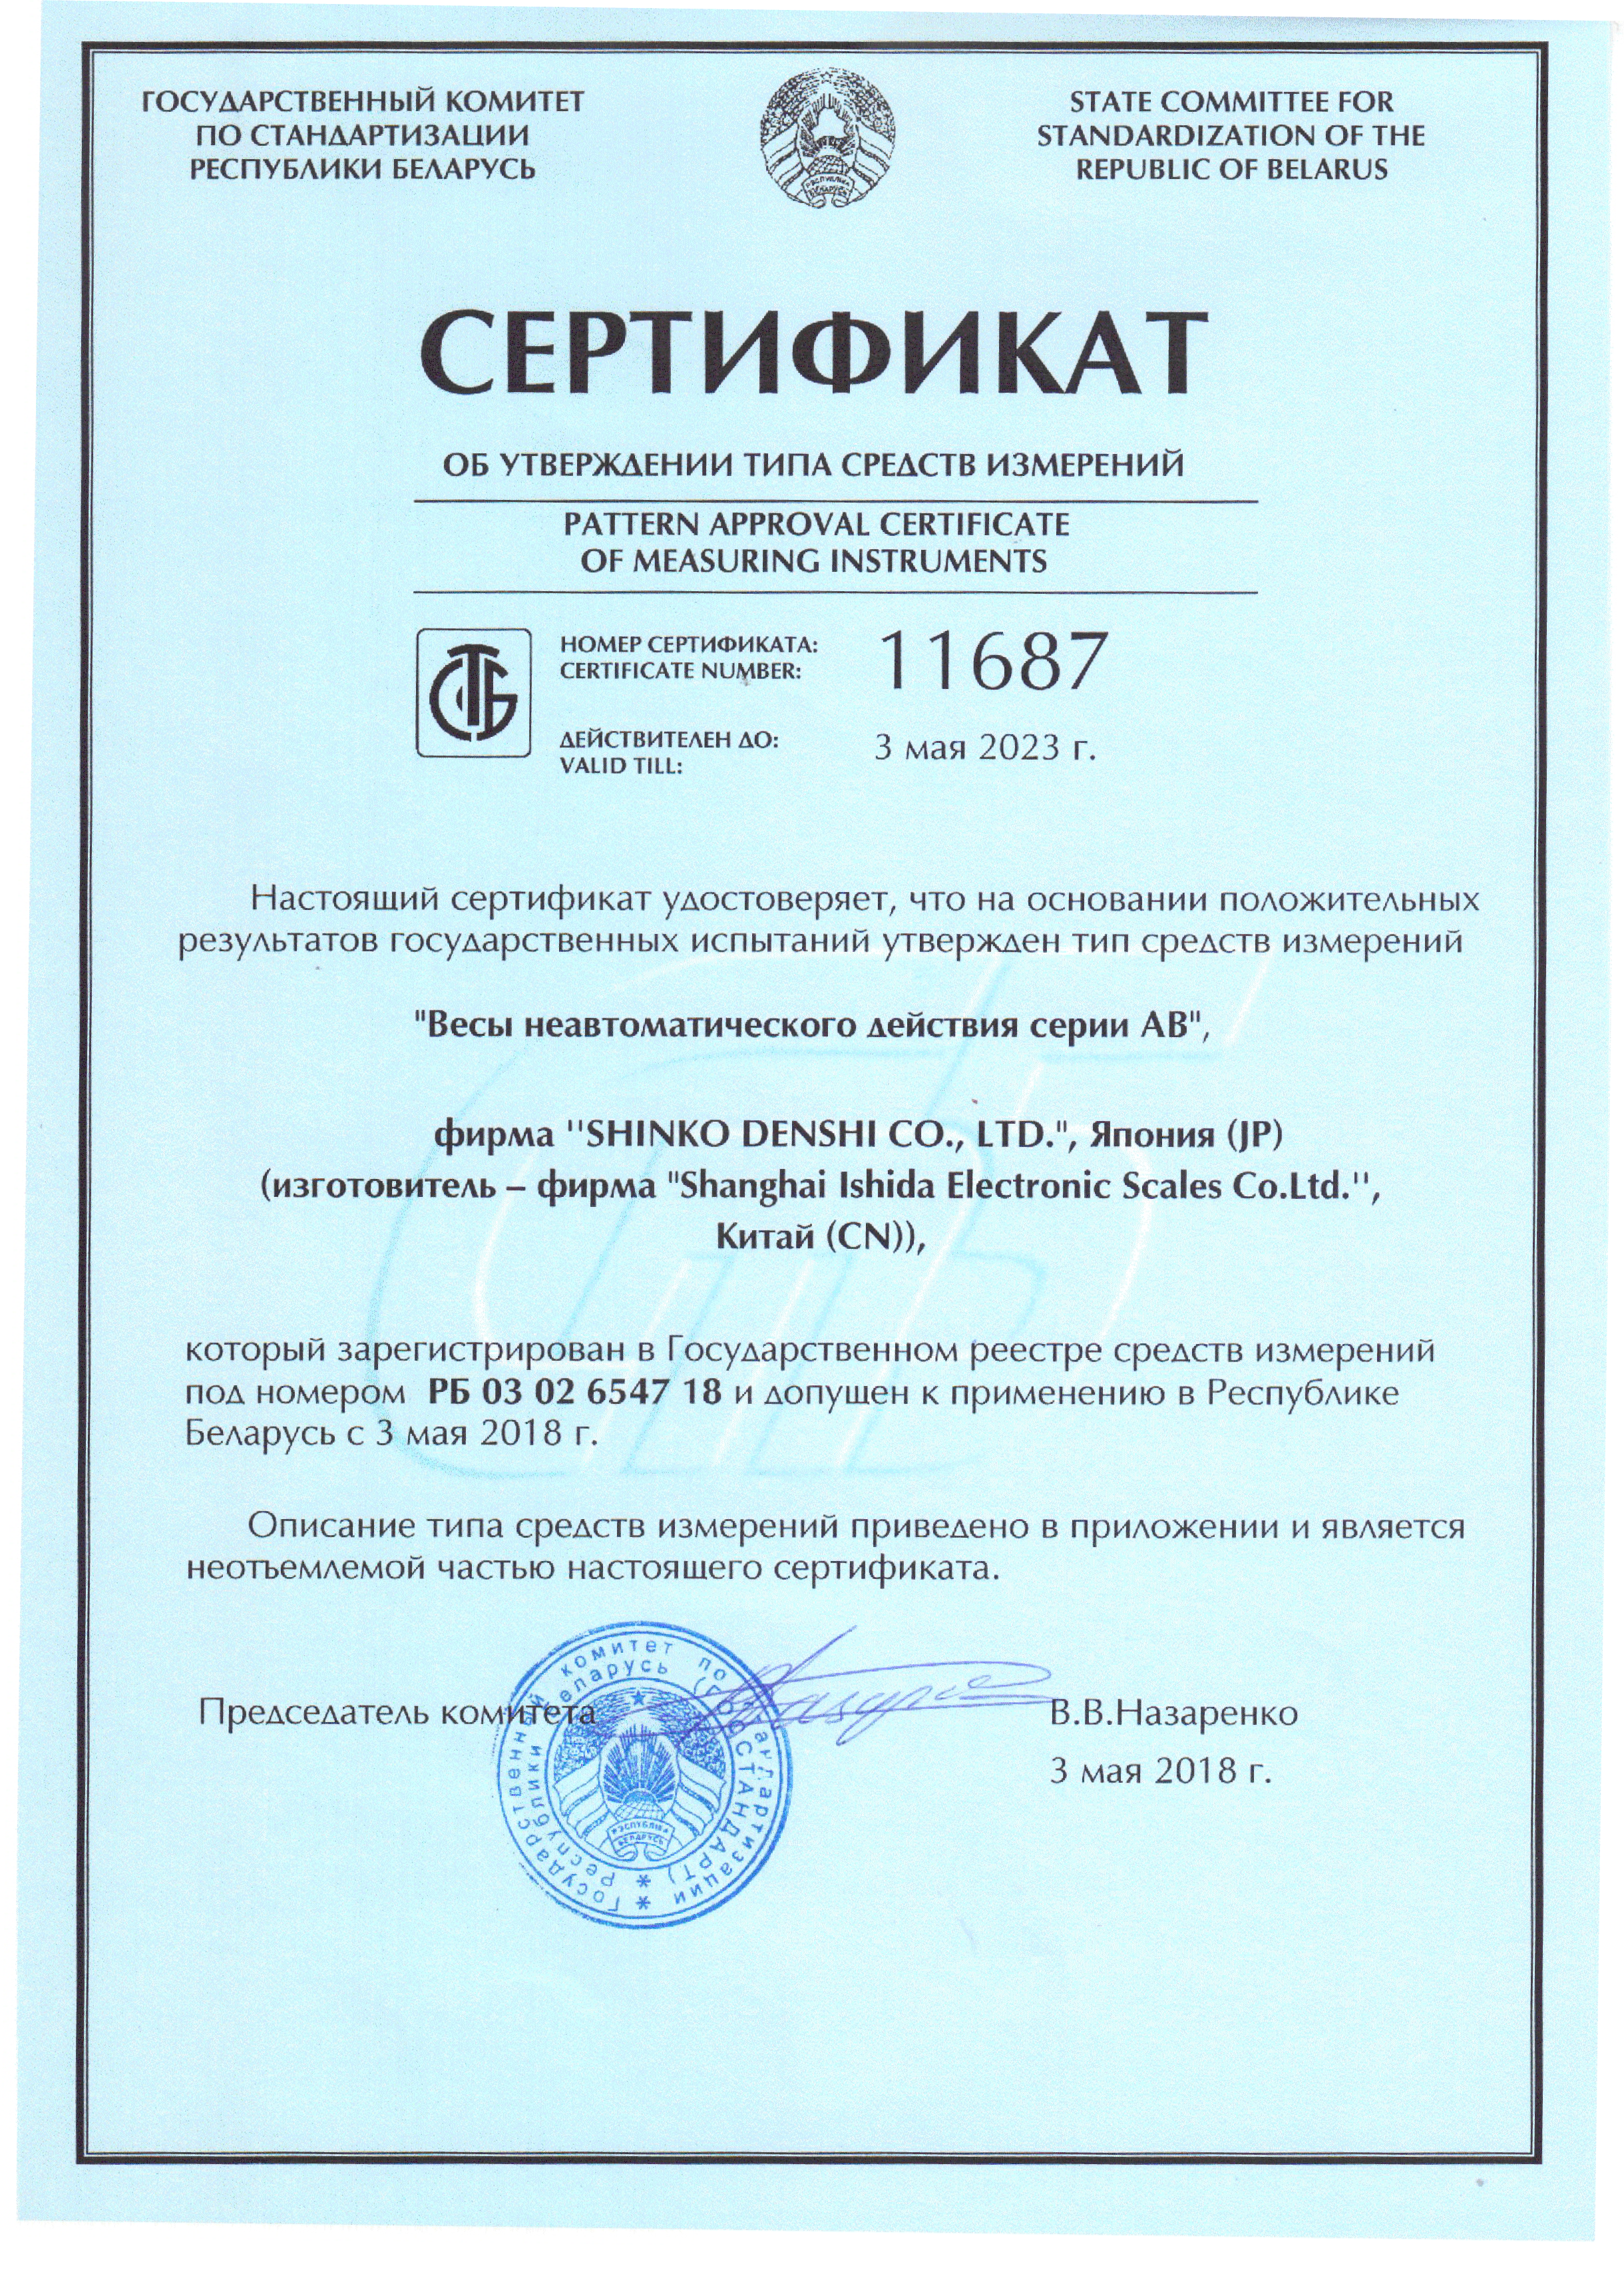 Получен сертификат об утверждении типа средств измерений на лабораторные весы ViBRA серии AB в Республике Беларусь